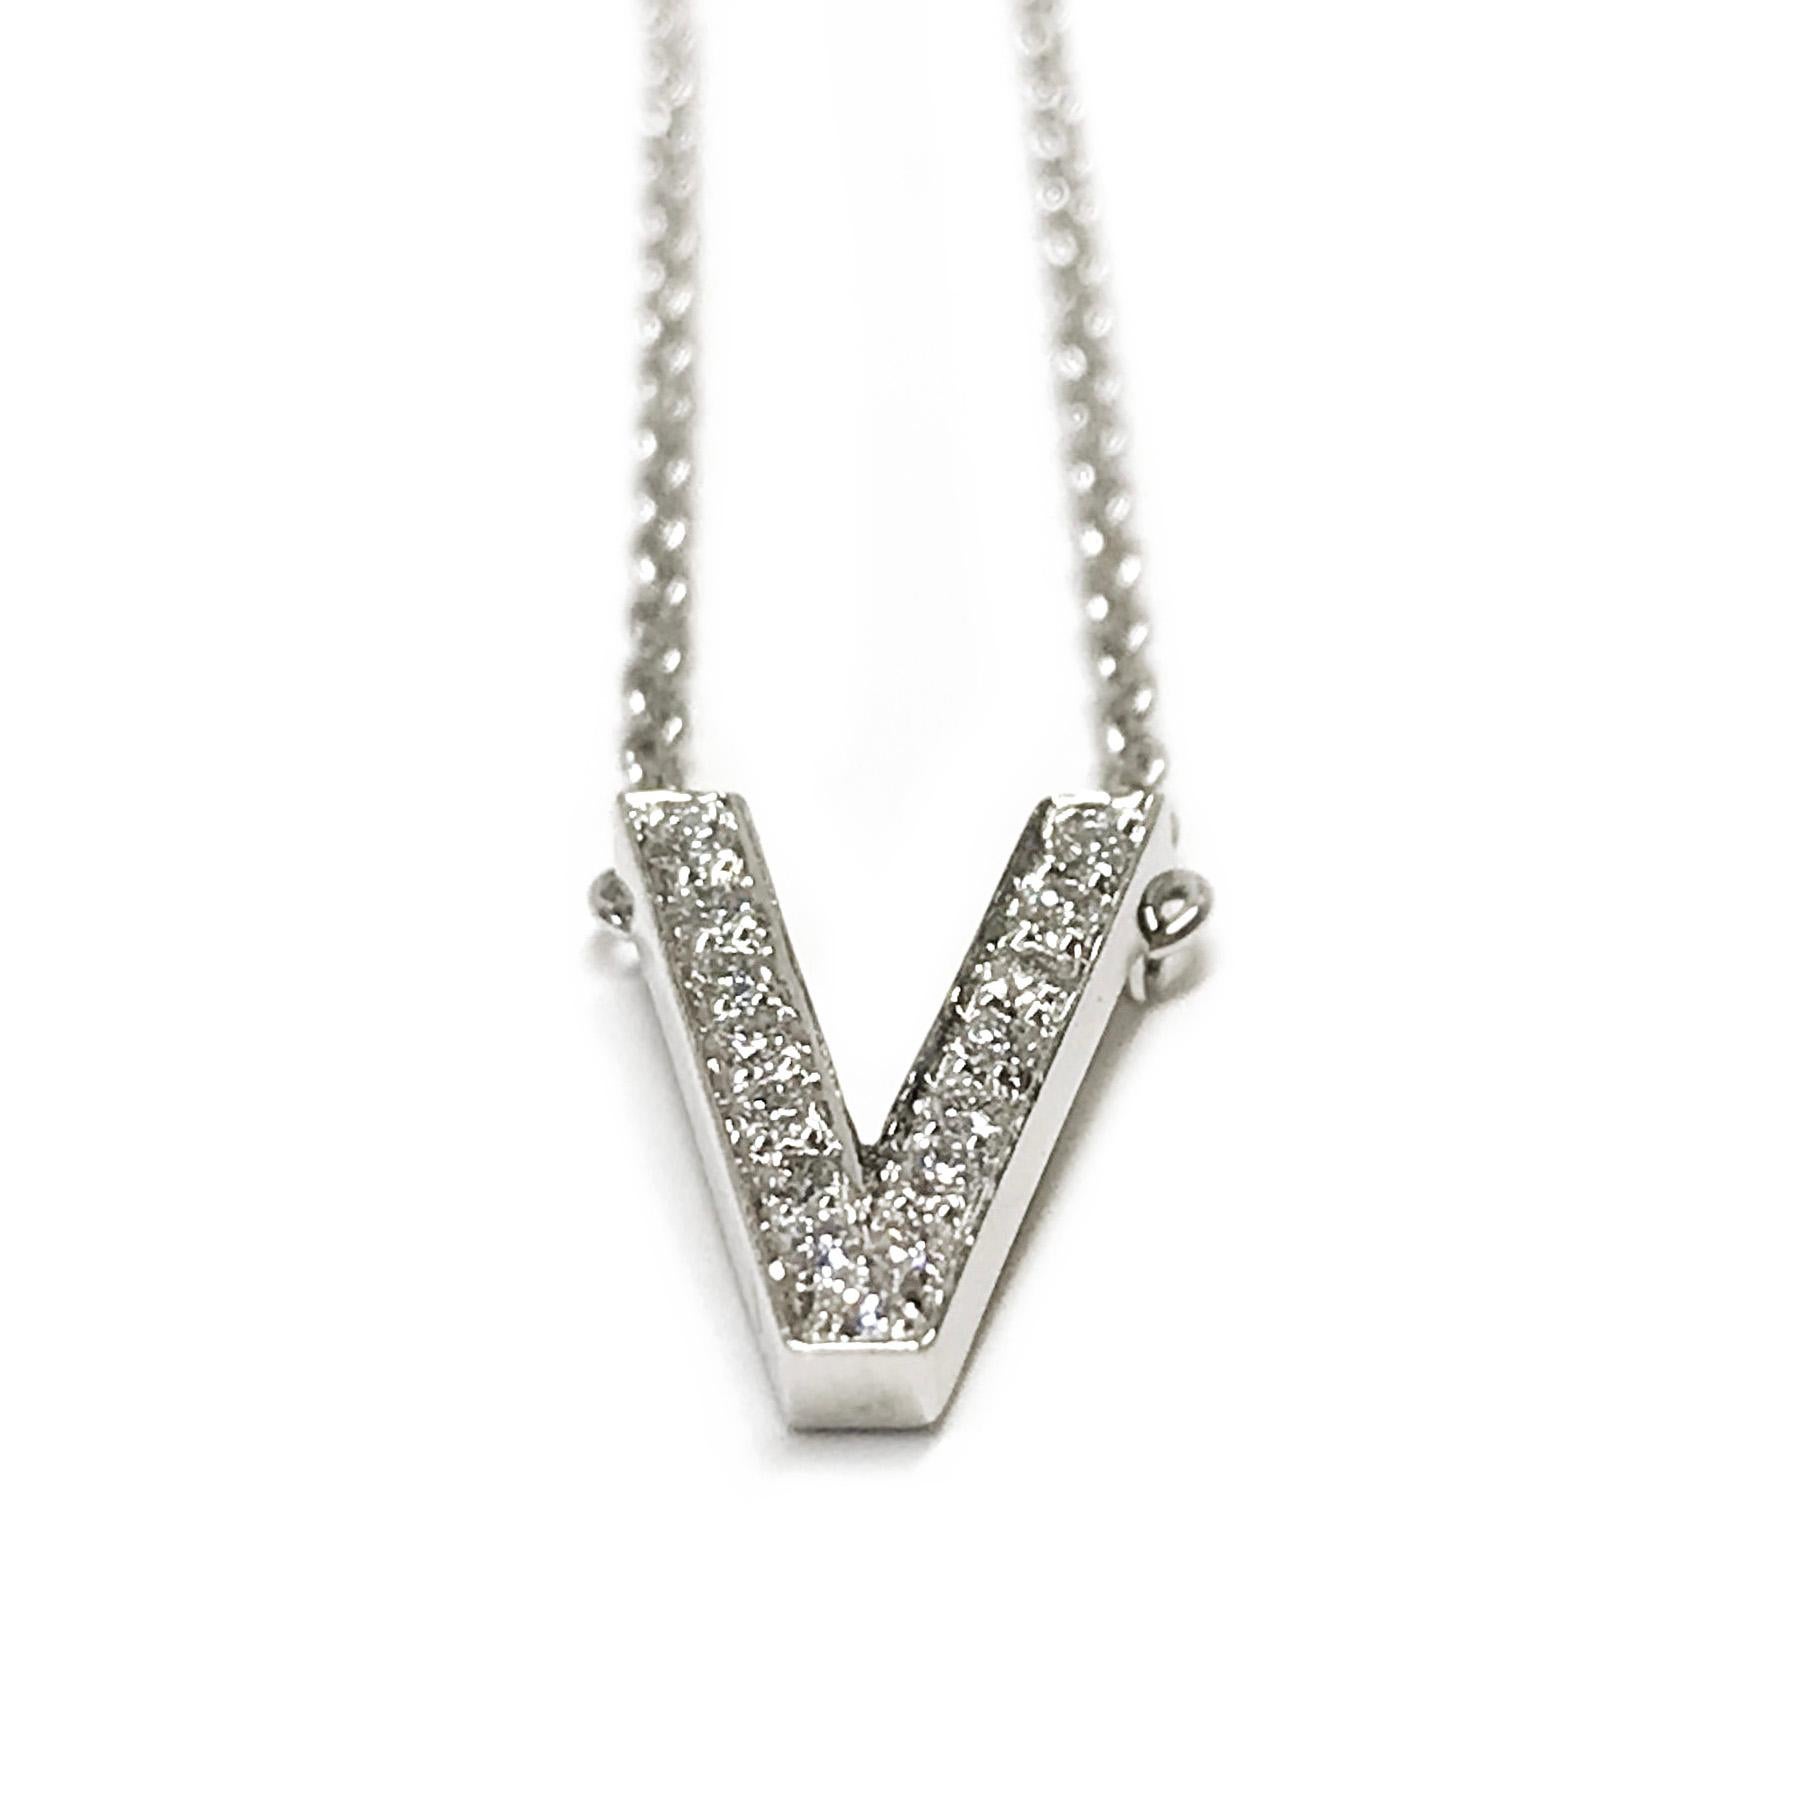 Tiffany & Co. Collier pendentif en V en platine avec quinze diamants ronds de taille brillant. Les diamants sont sertis en V dans un pavage. Les diamants sont de pureté VS (G.I.A.) et de couleur G (G.I.A.) et ont un poids total de 0,18 carat. Le